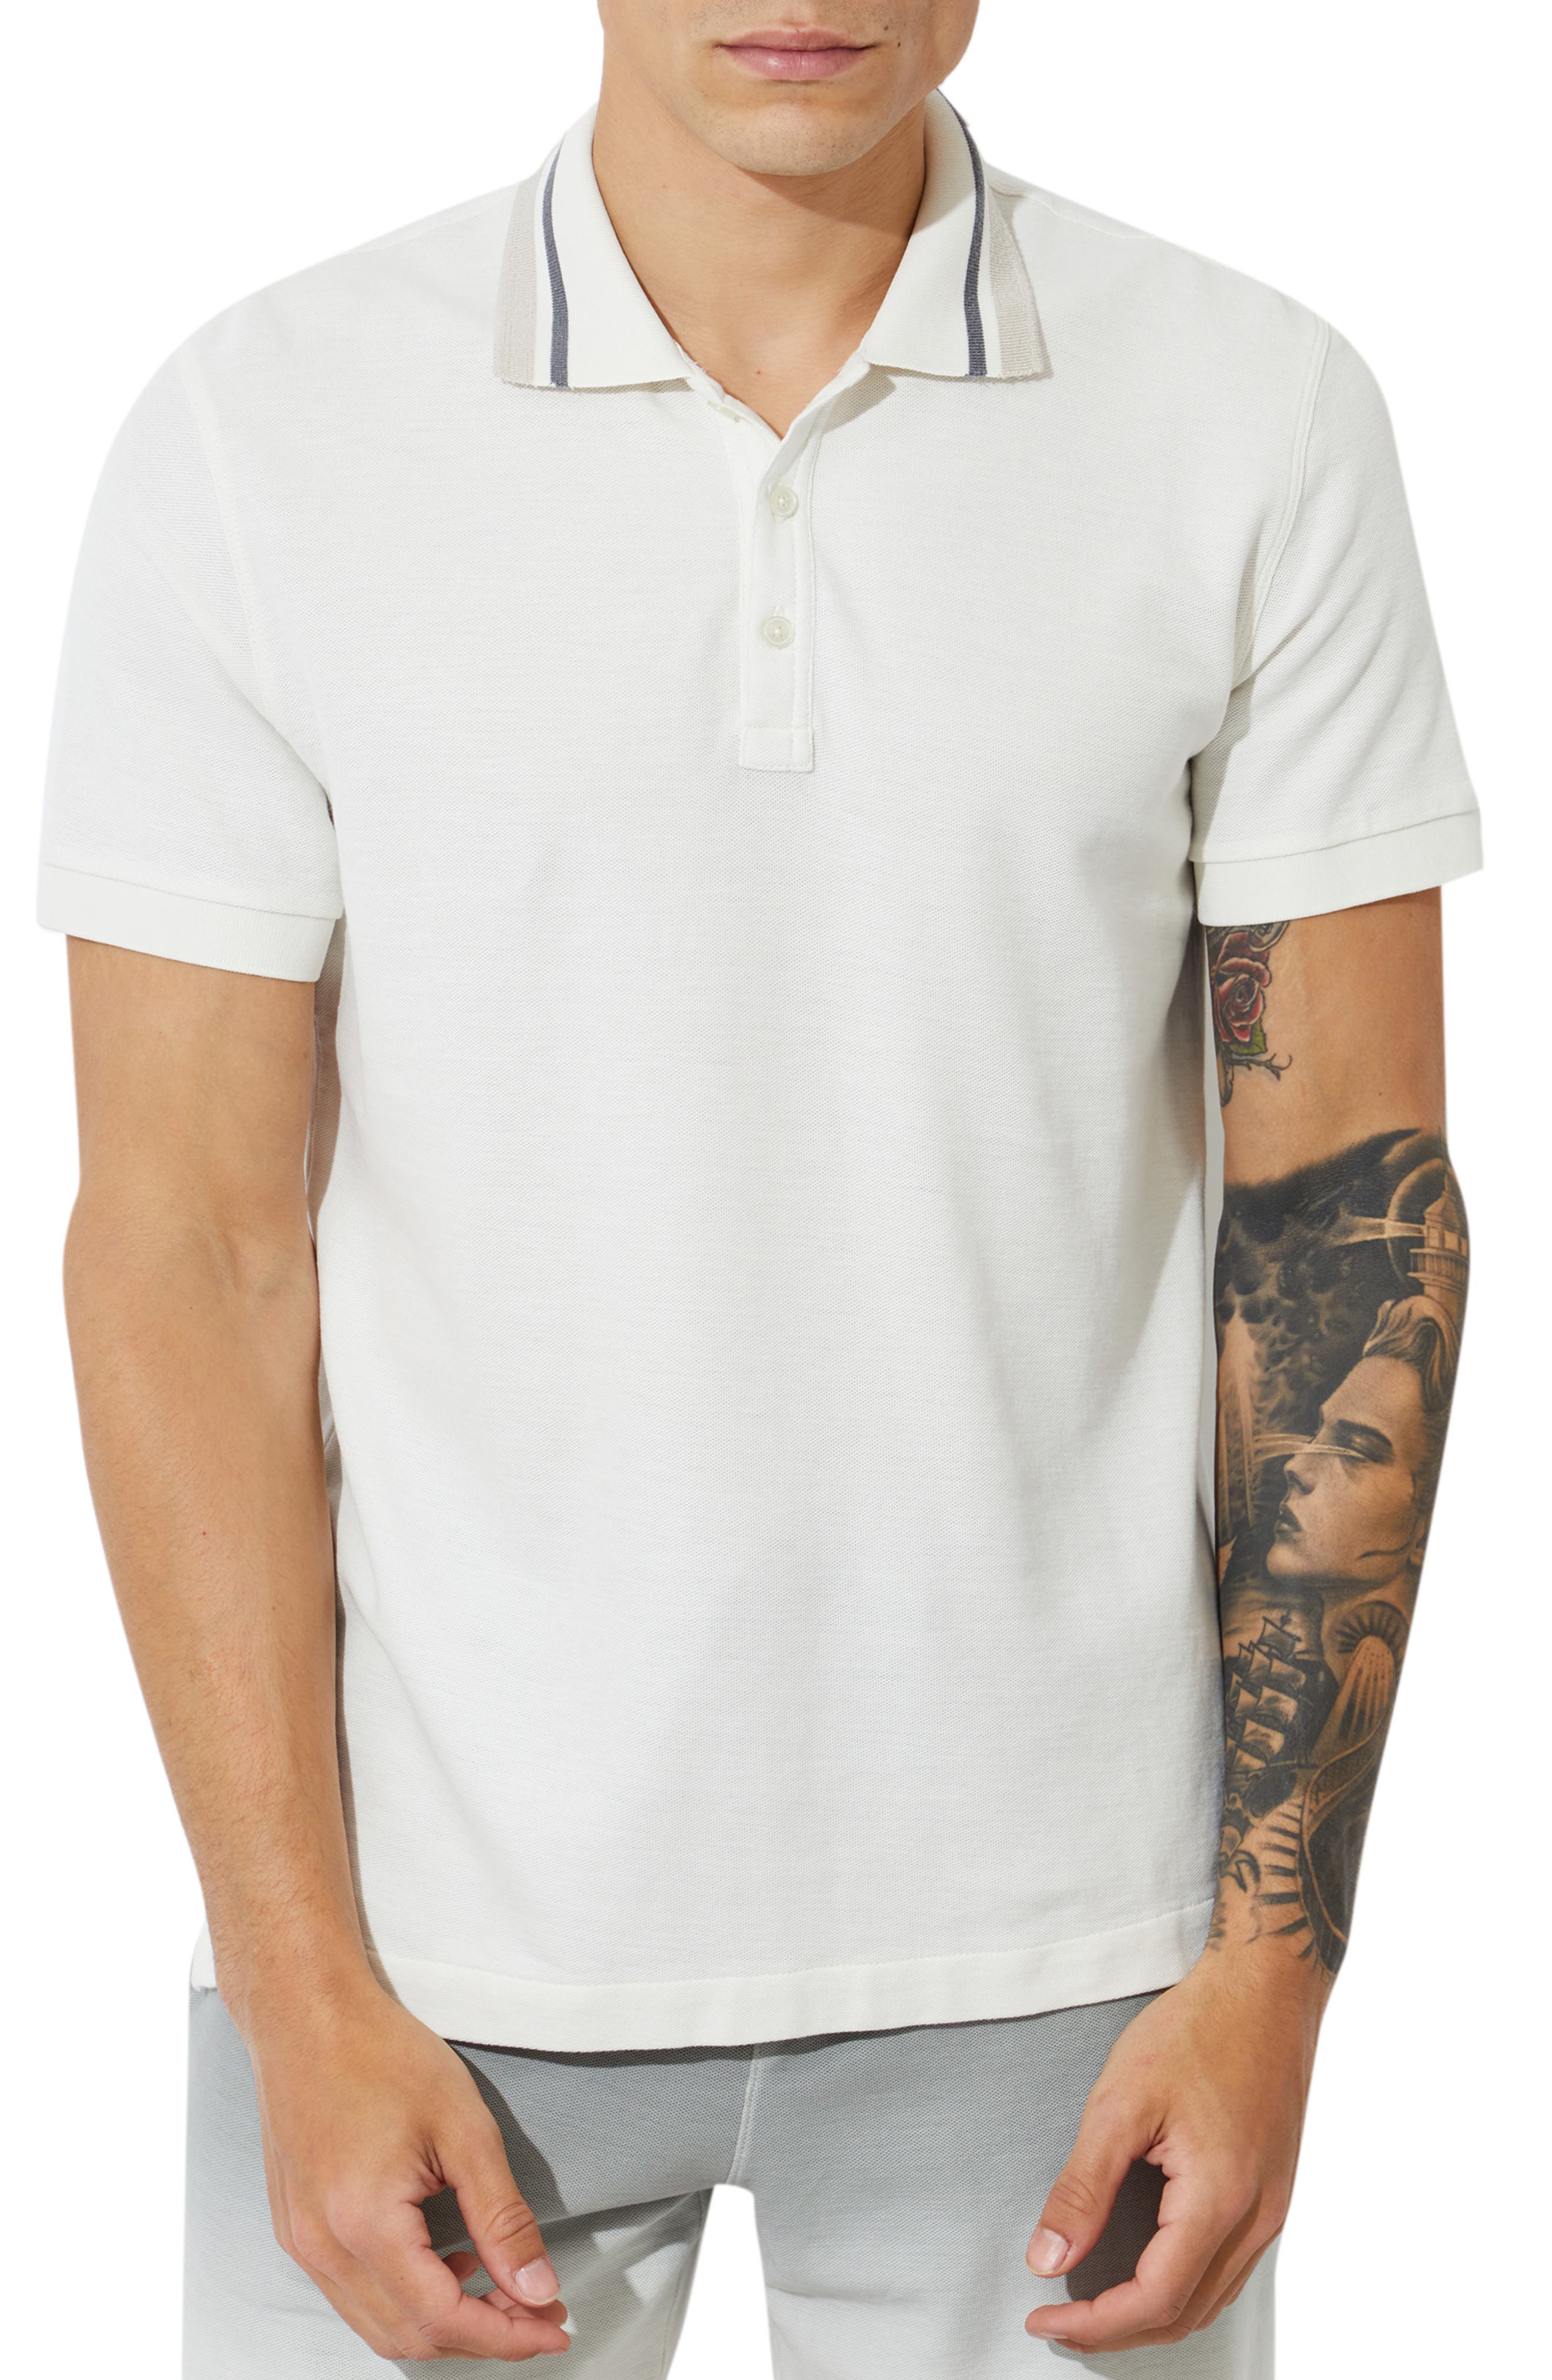 white polo tee shirt